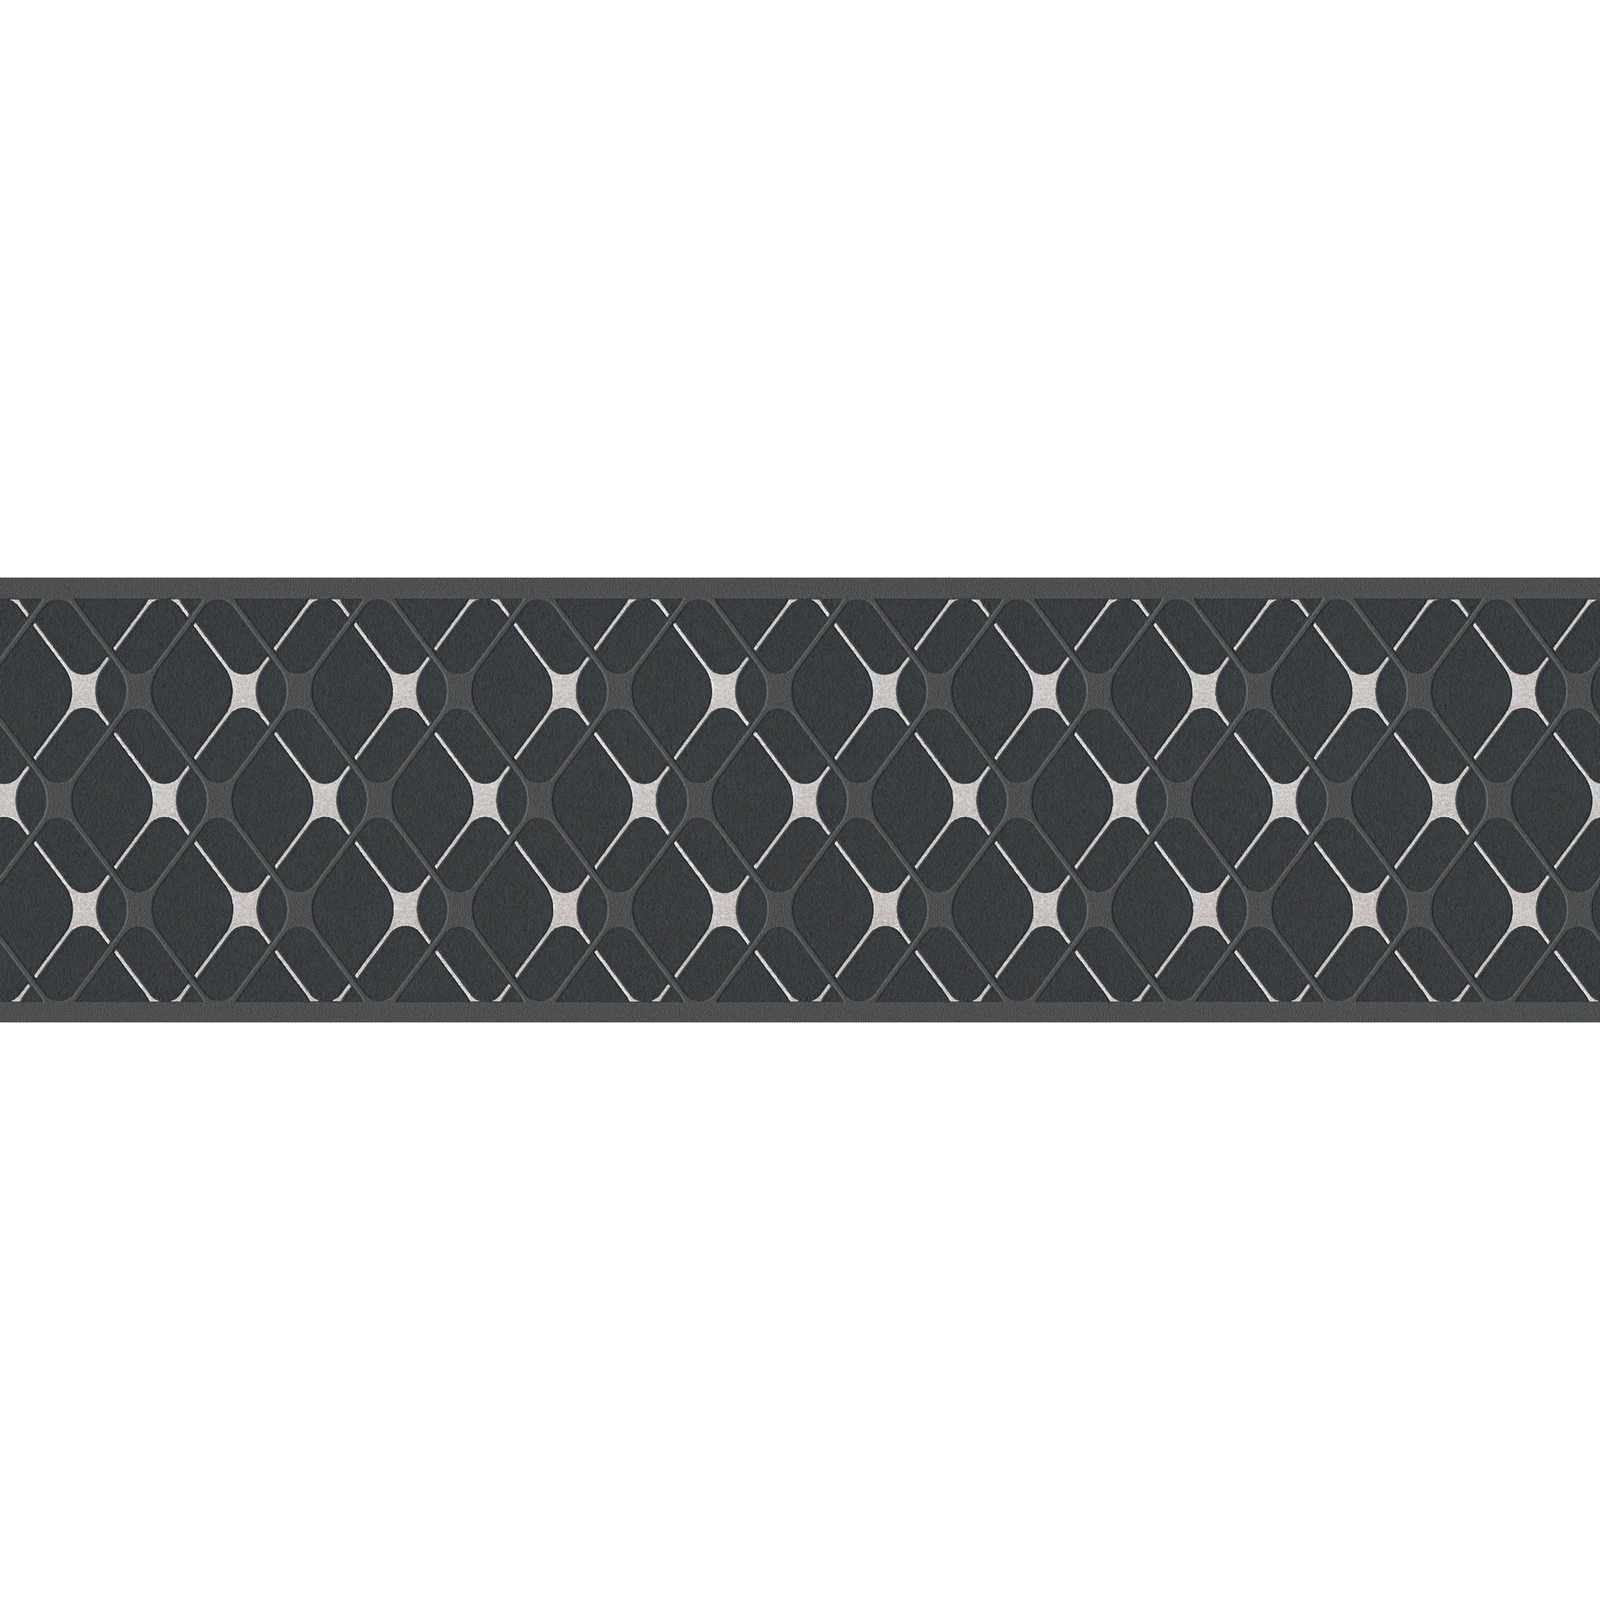 Selbstklebende Tapetenborte mit Rautenmuster – Schwarz, Weiß
